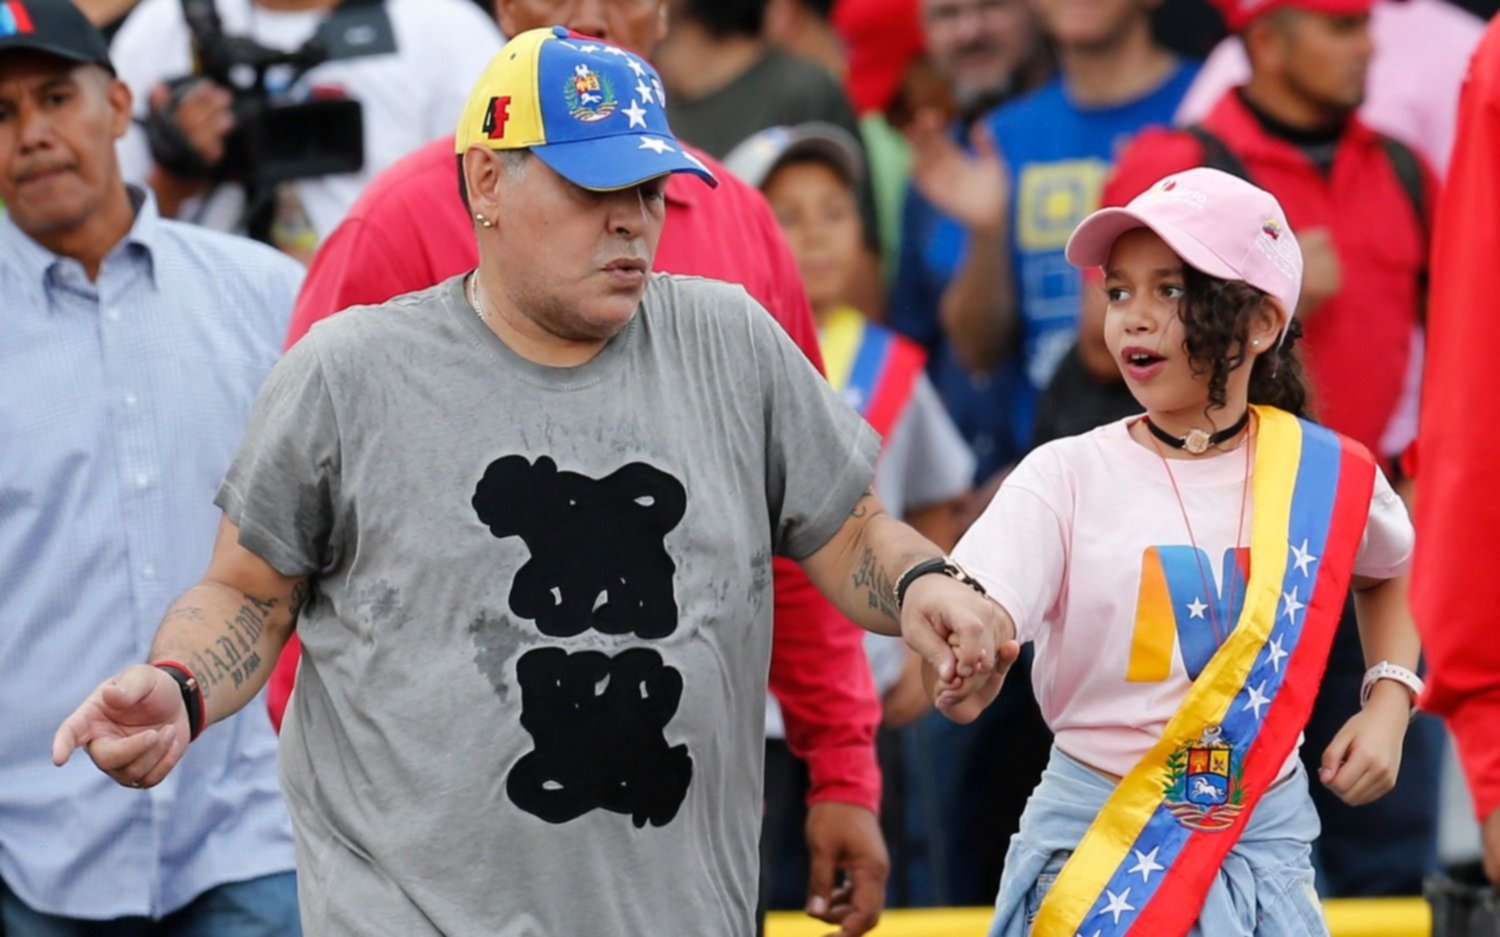 El baile de Maradona en el cierre de campaña de Maduro en Venezuela